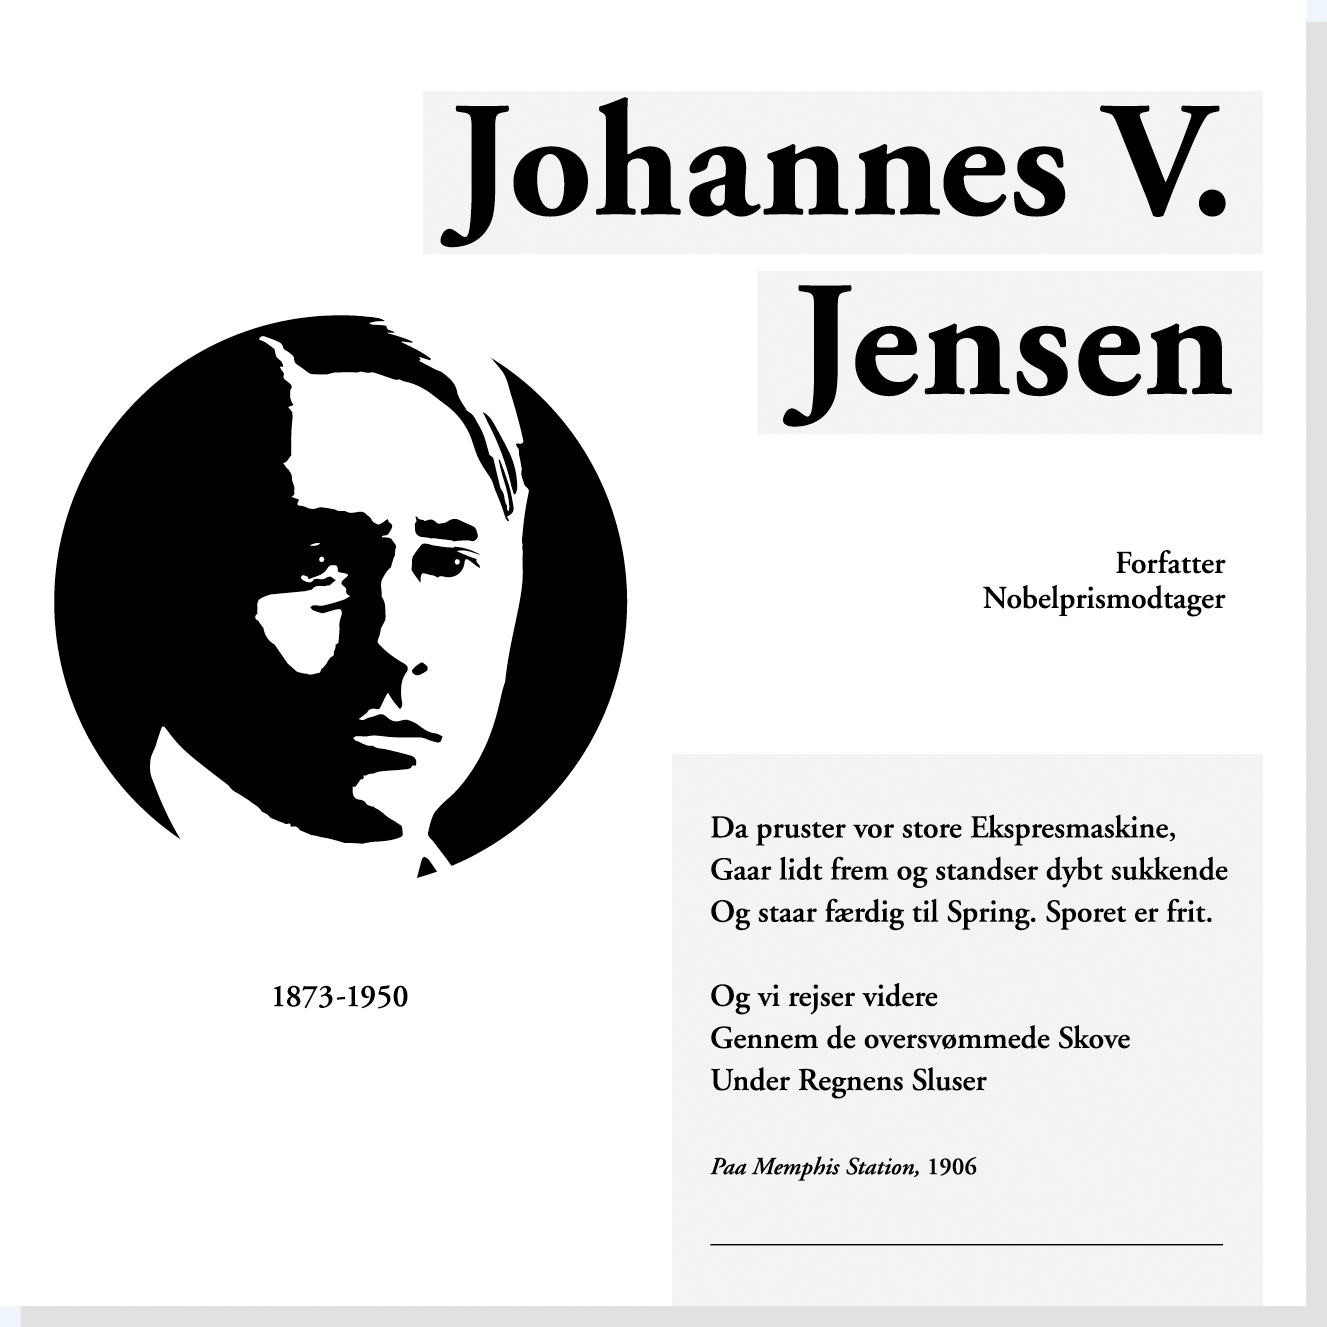 Johannes V. Jensen er en af Rysensteens 22 udvalgte danske dannelsespersoner